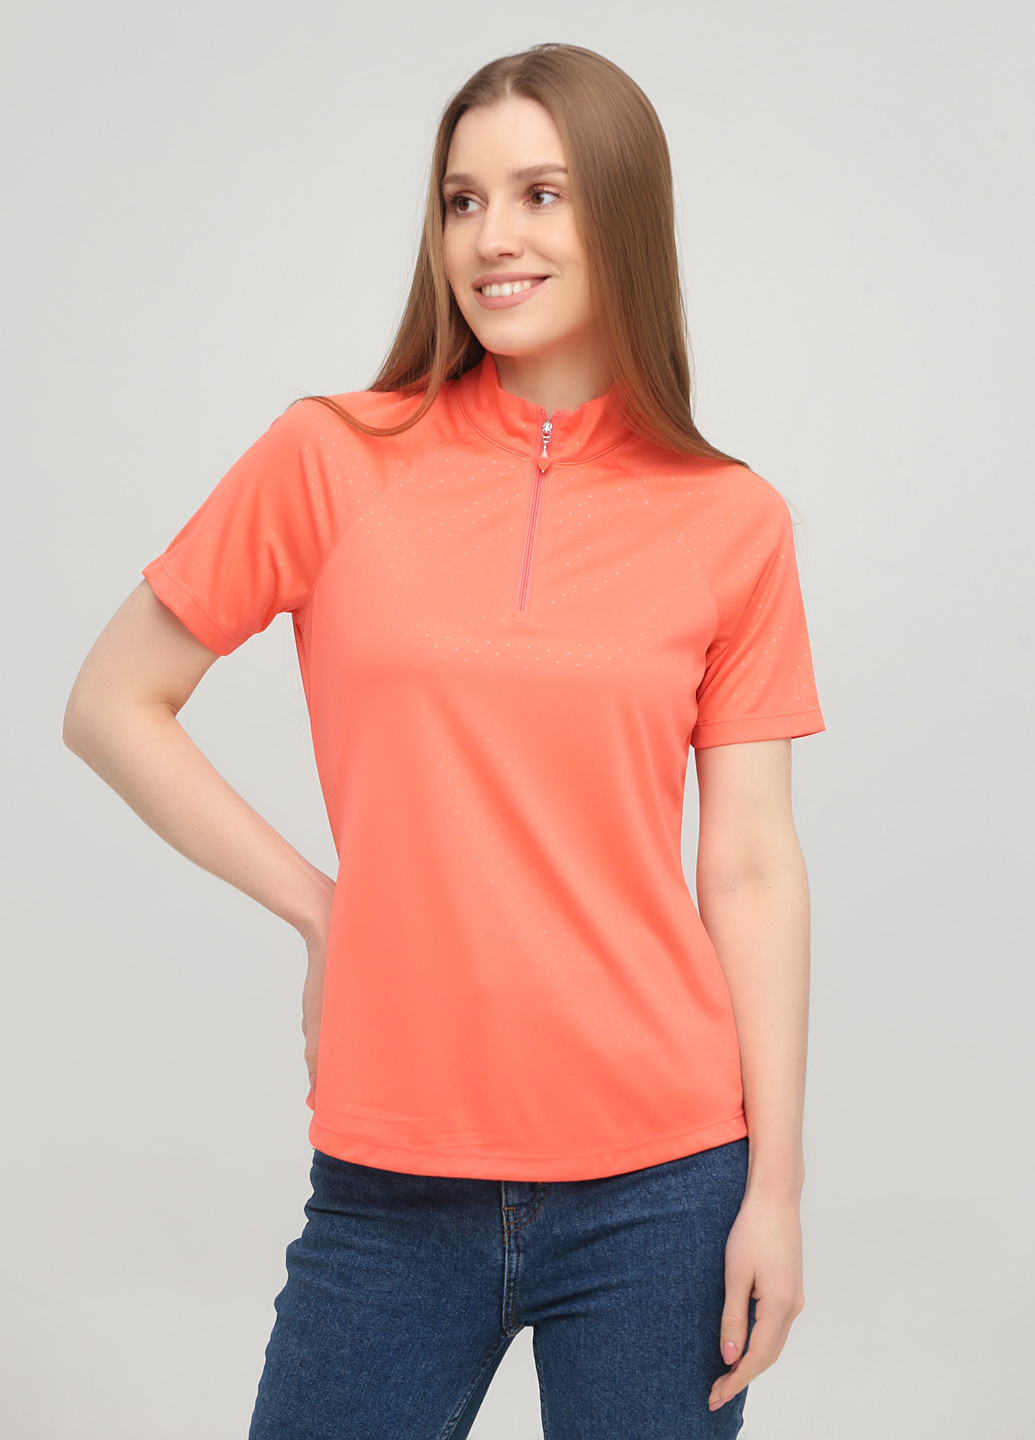 Коралловая женская футболка-поло Greg Norman в горошек